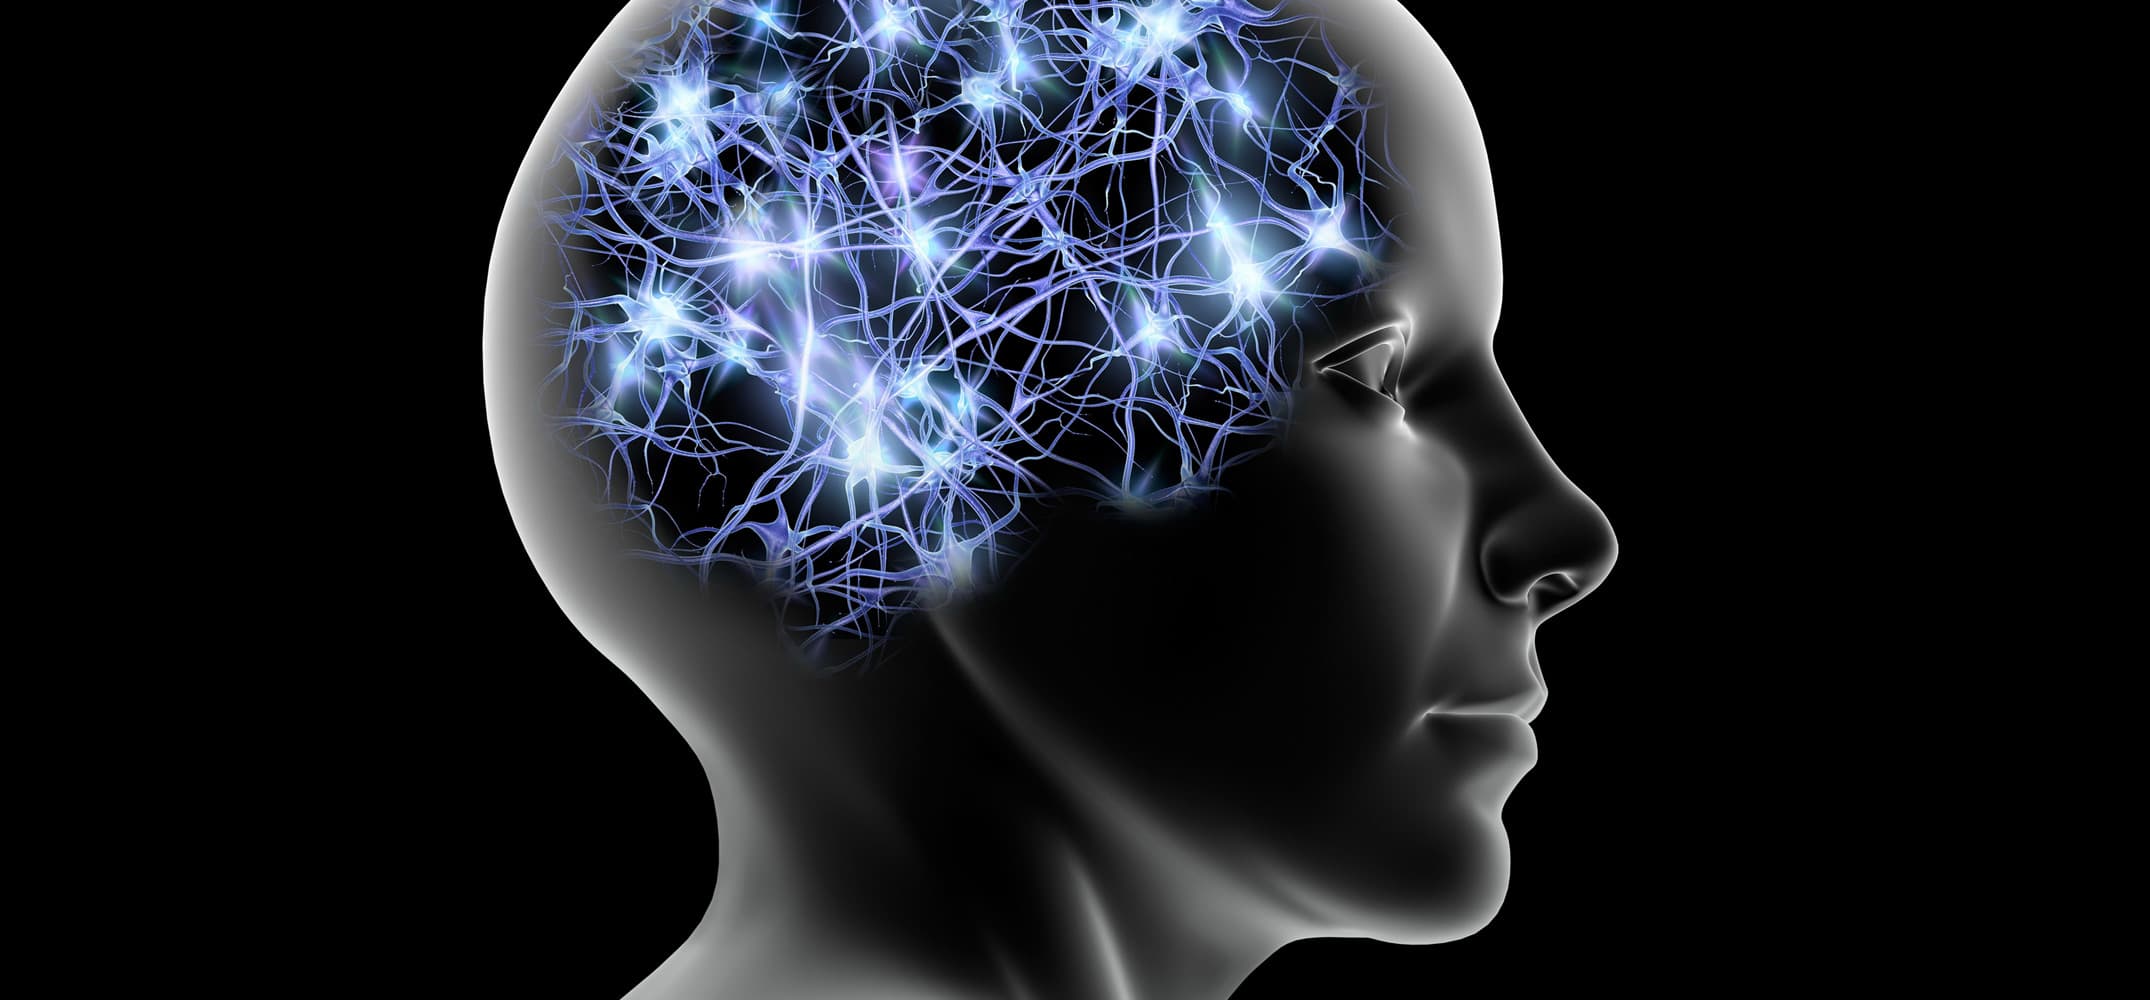 Brain disorder. Память человека. Мыслительные процессы в голове. Визуализация мыслей. Мысленное моделирование.